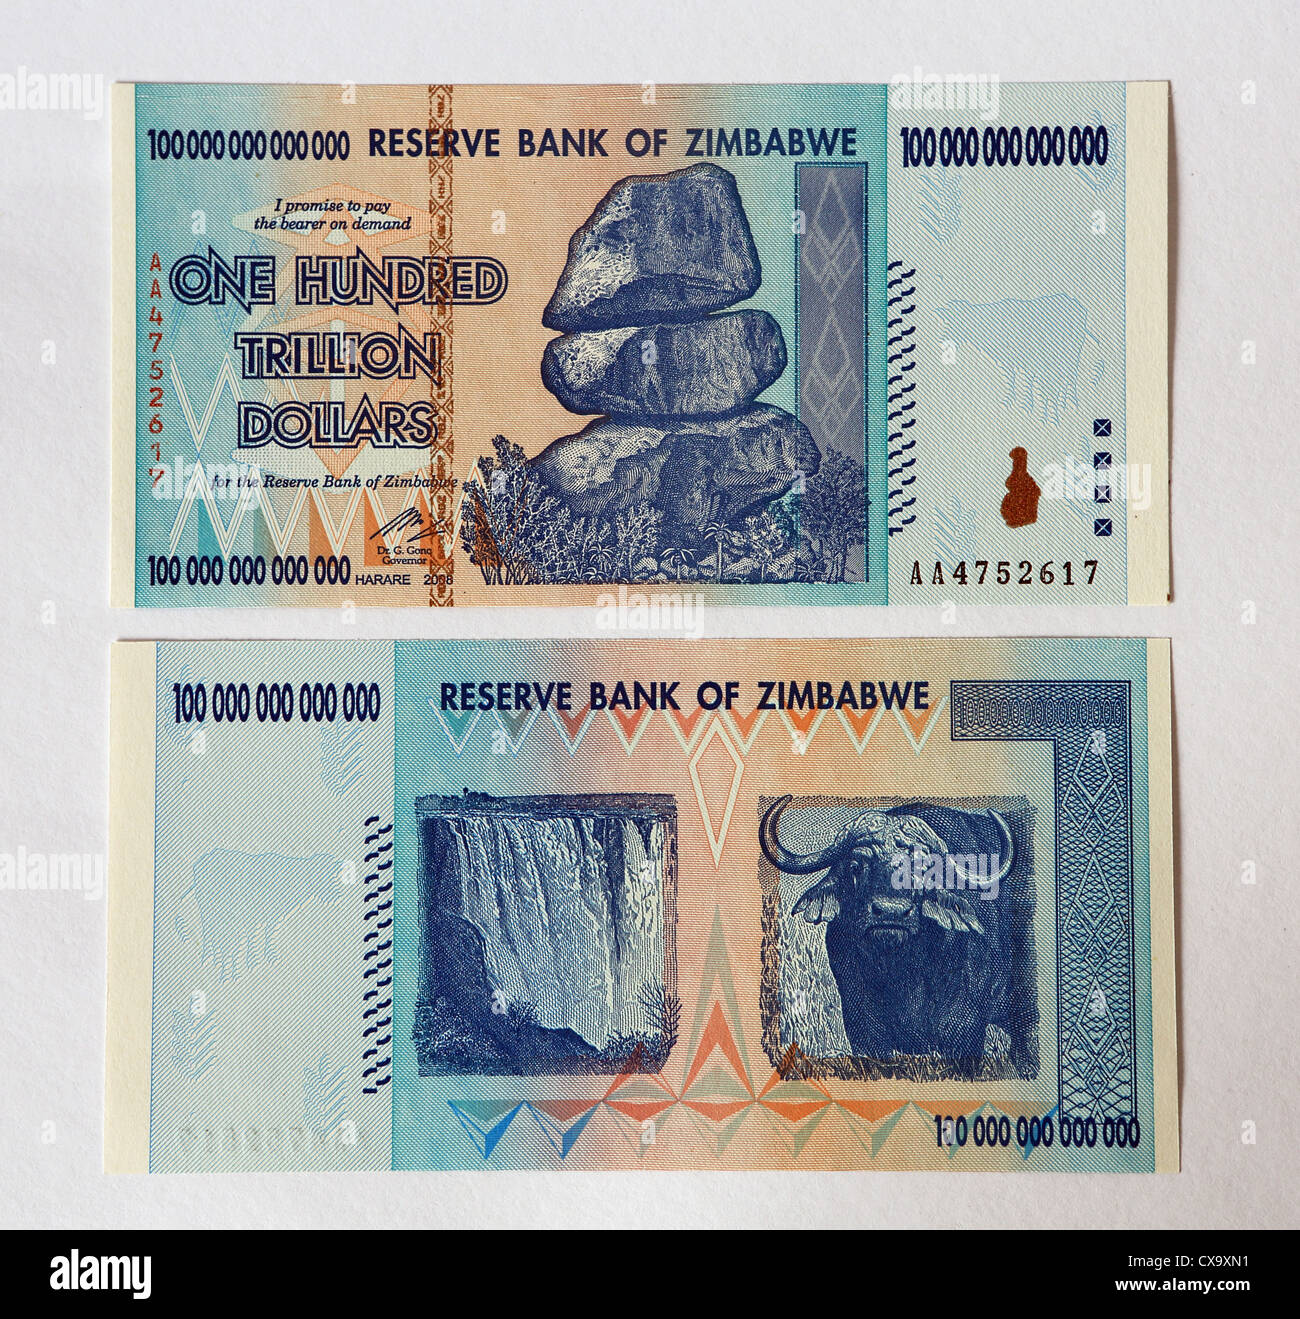 Reserve Bank of Zimbabwe One Hundred Trillion Dollars bank note. Stock Photo